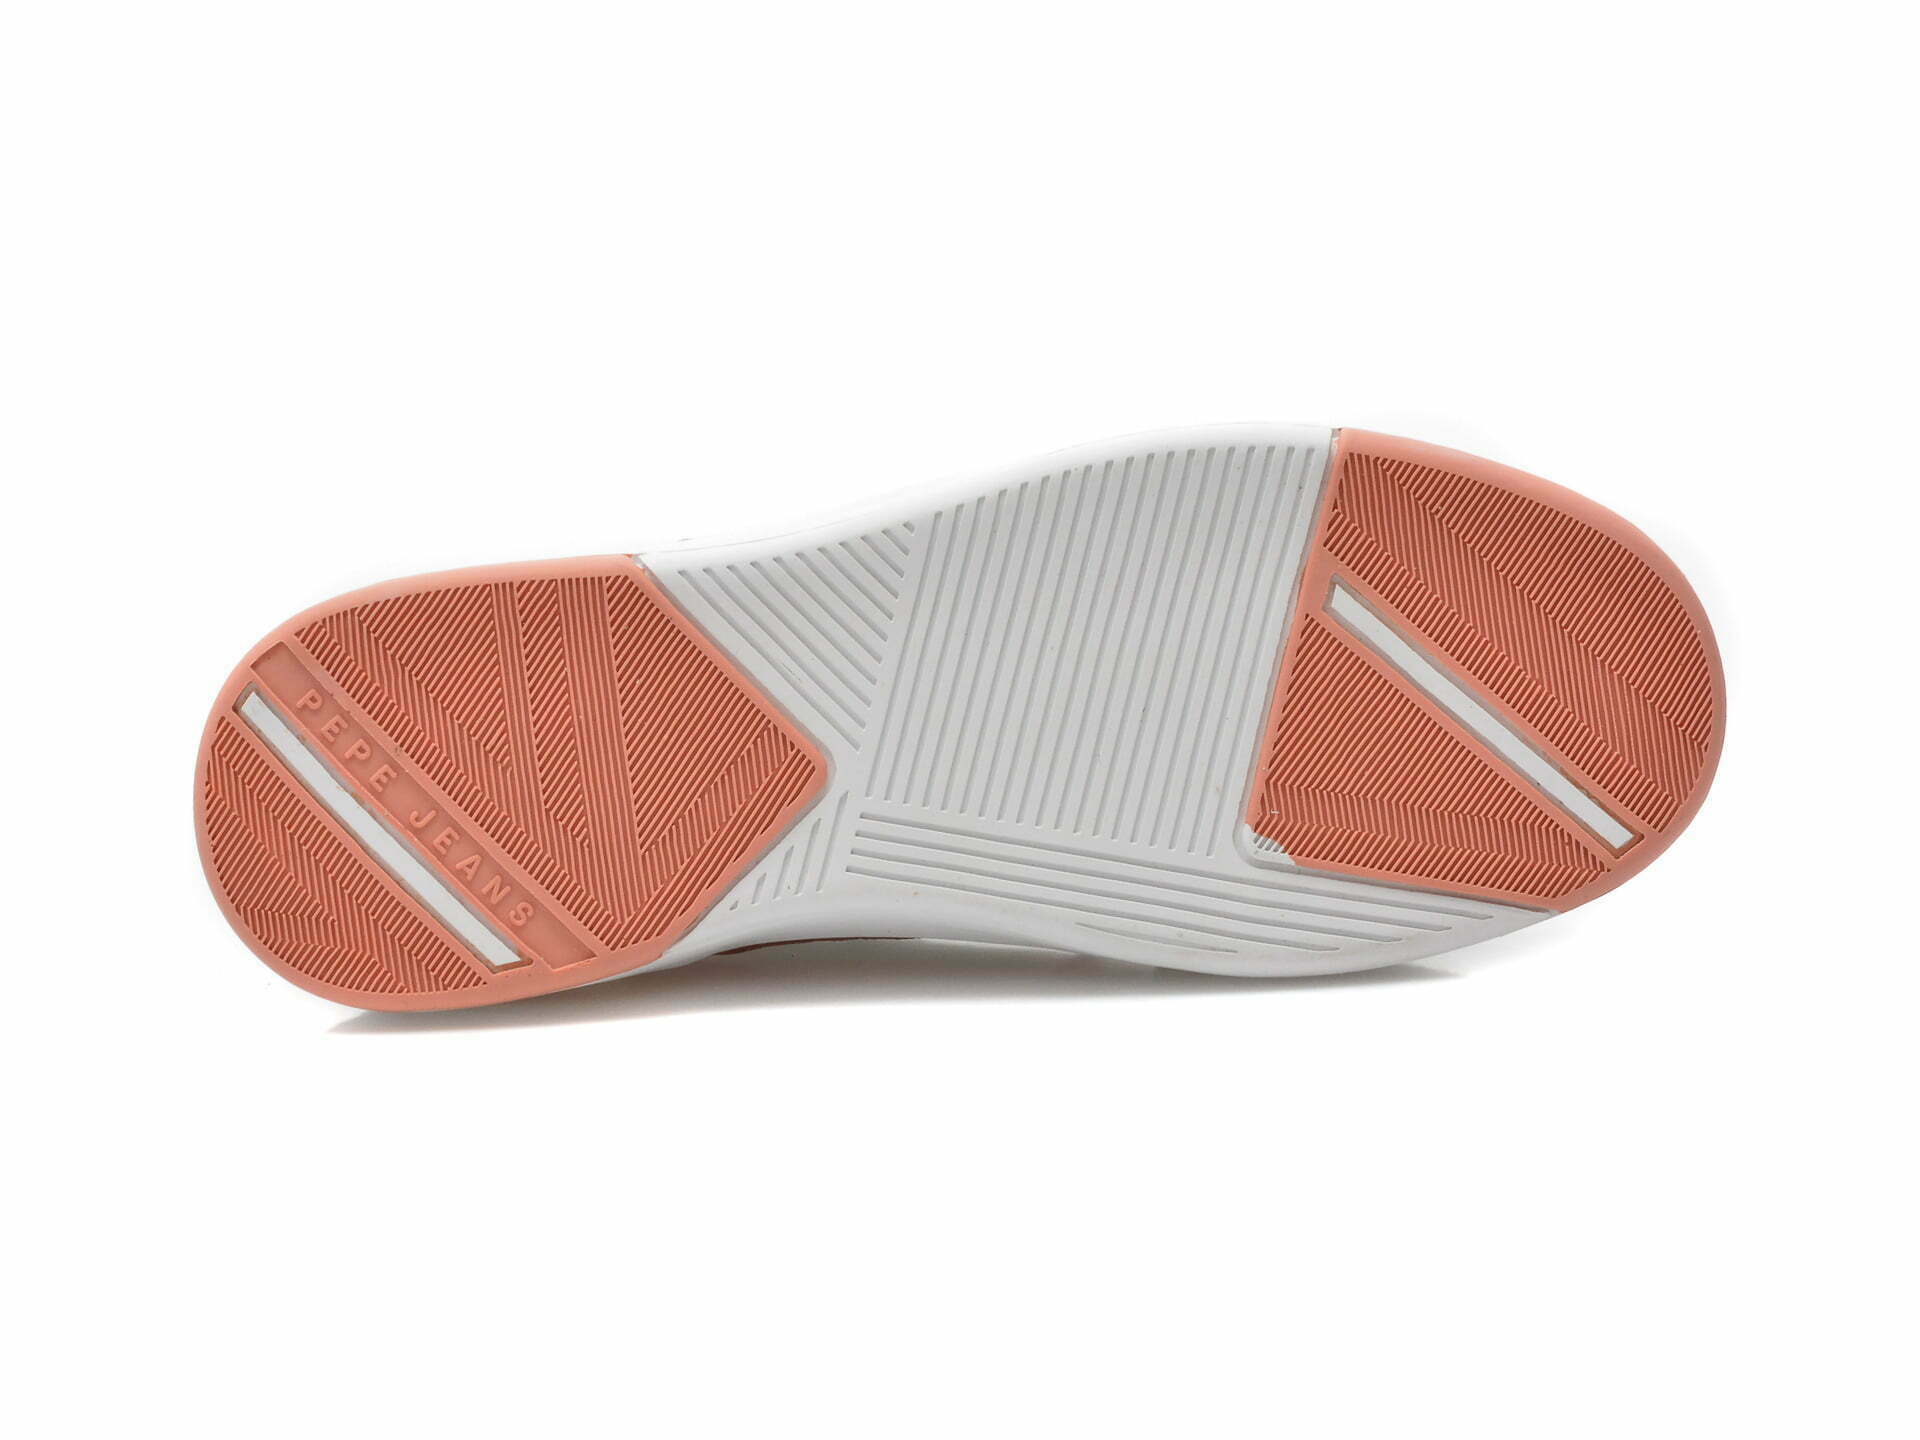 Comandă Încălțăminte Damă, la Reducere  Pantofi sport PEPE JEANS roz, LS31350, din piele naturala Branduri de top ✓